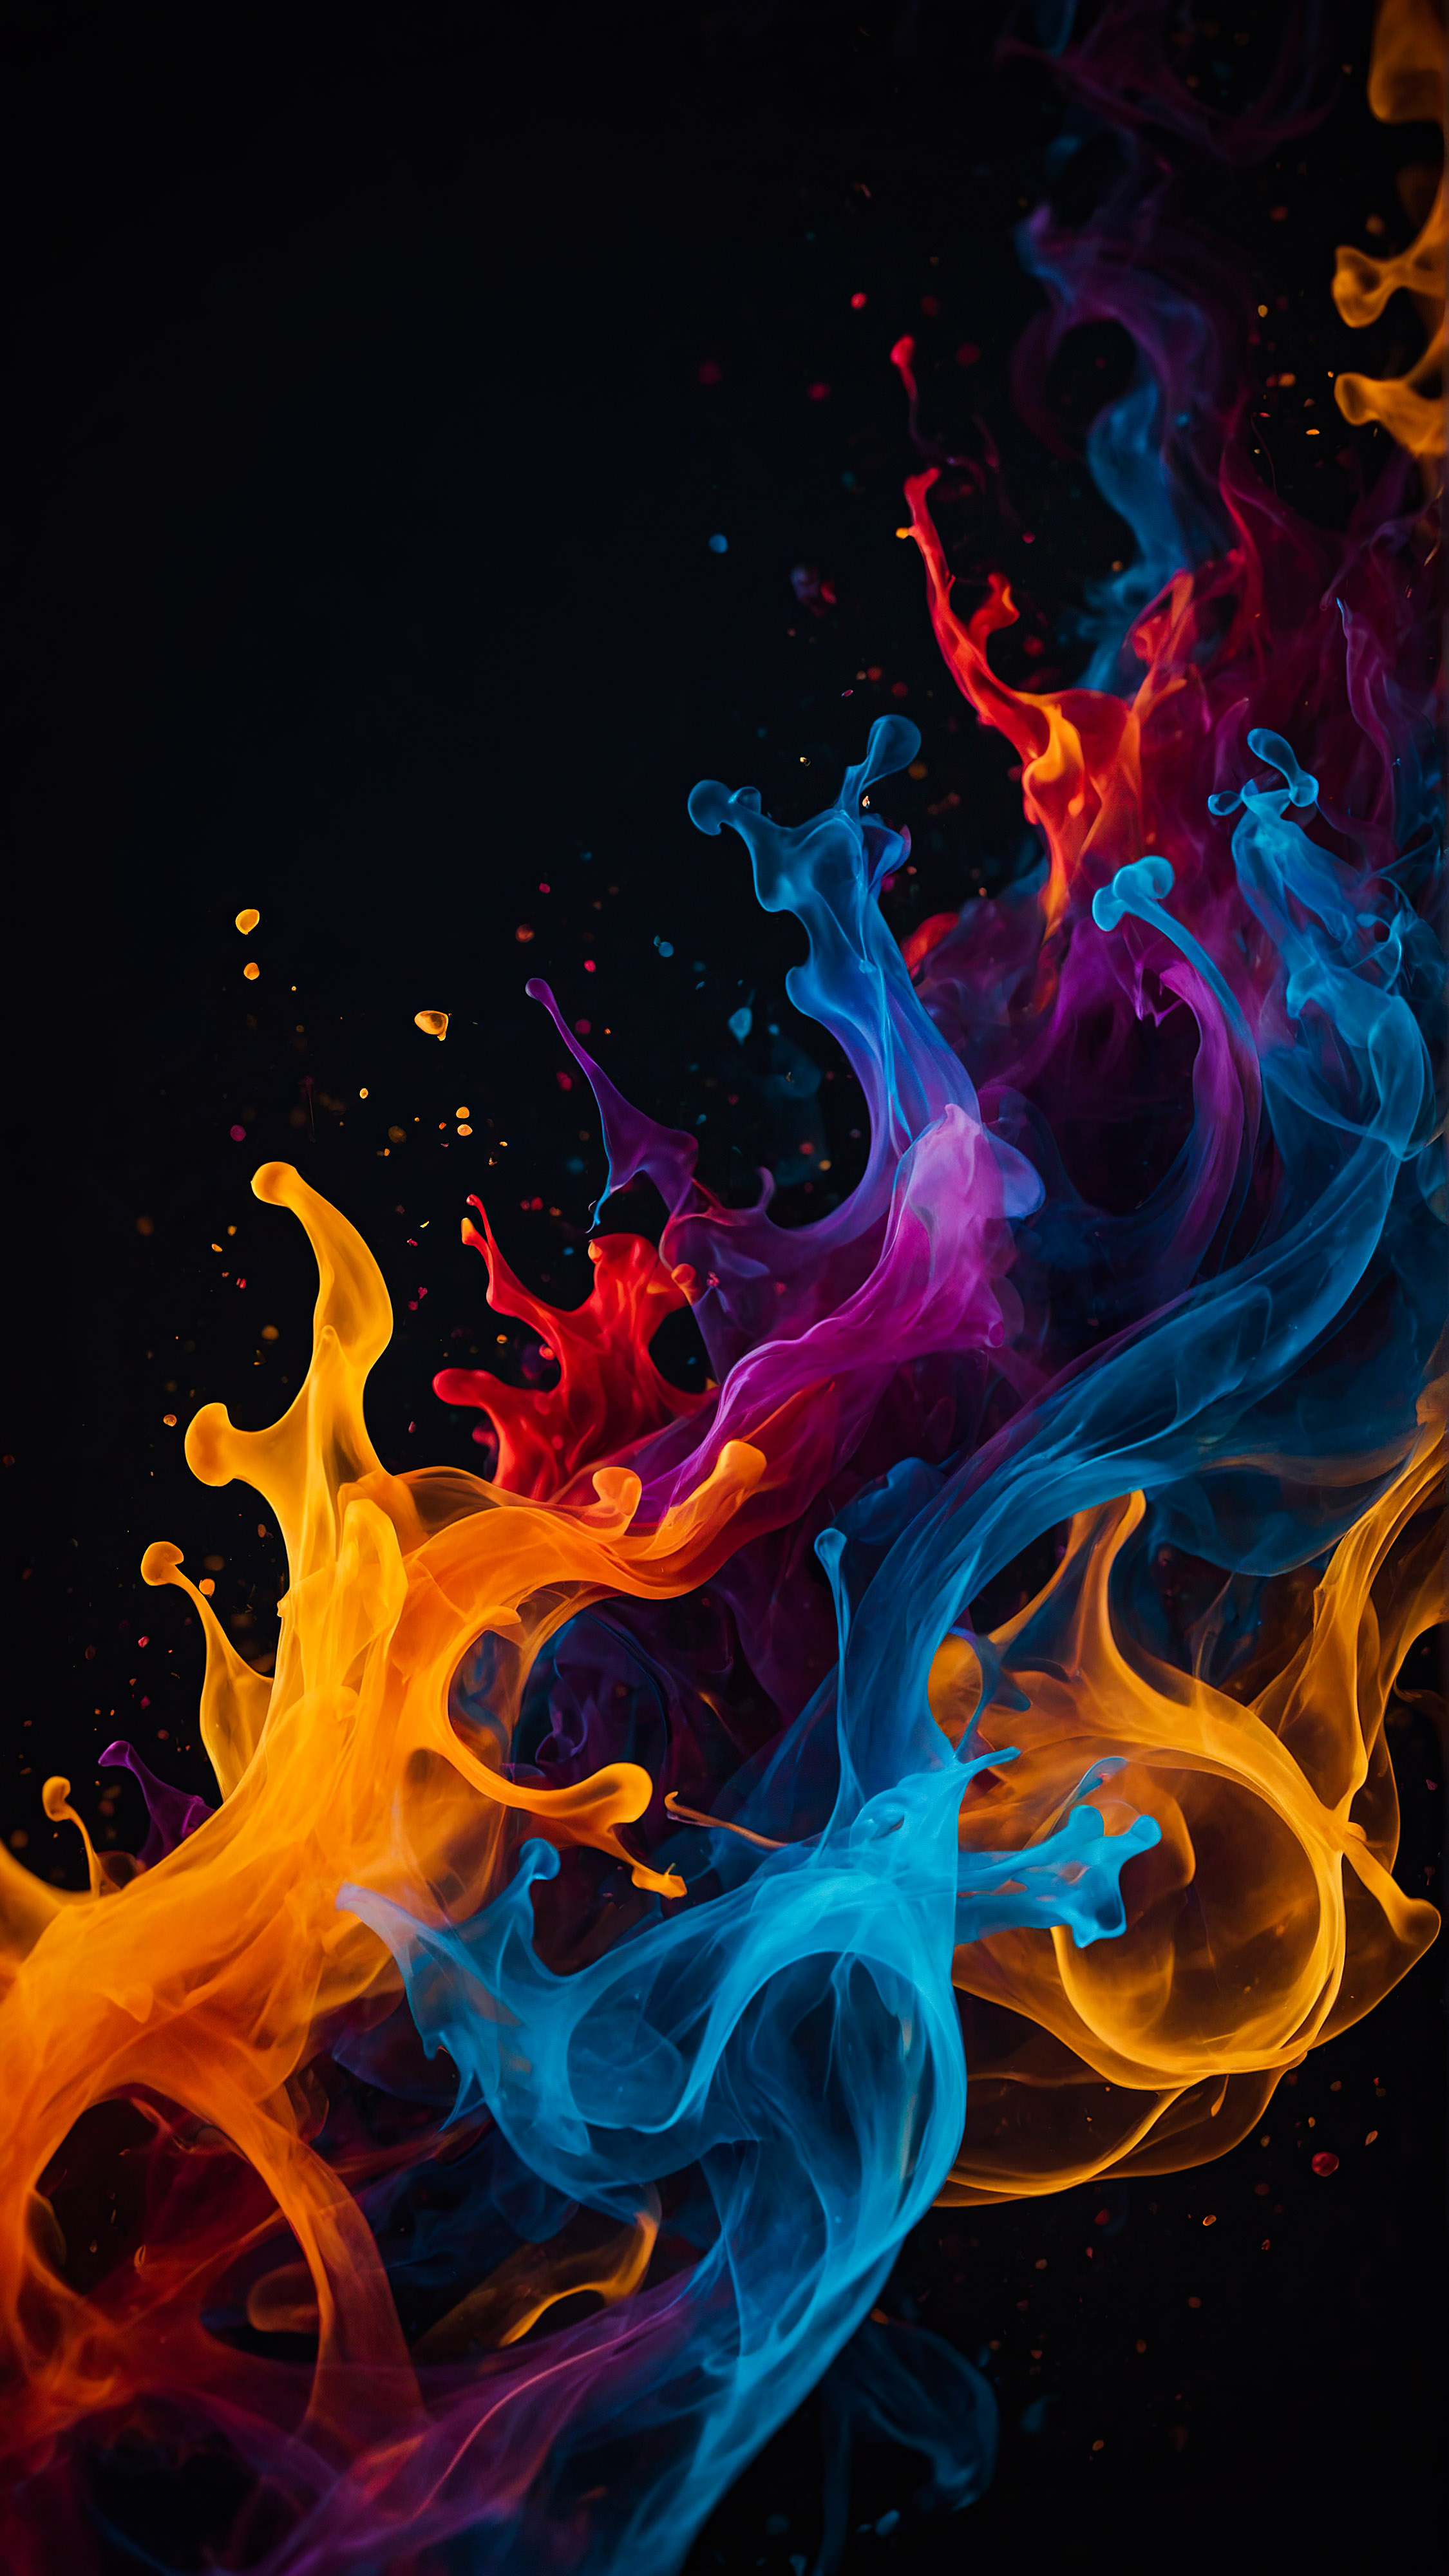 Obtenez un sens du mouvement et de l'énergie avec notre fond d'écran iPhone noir style en 4K, présentant des formes abstraites entrelacées qui ressemblent à des flammes colorées sur un fond sombre.